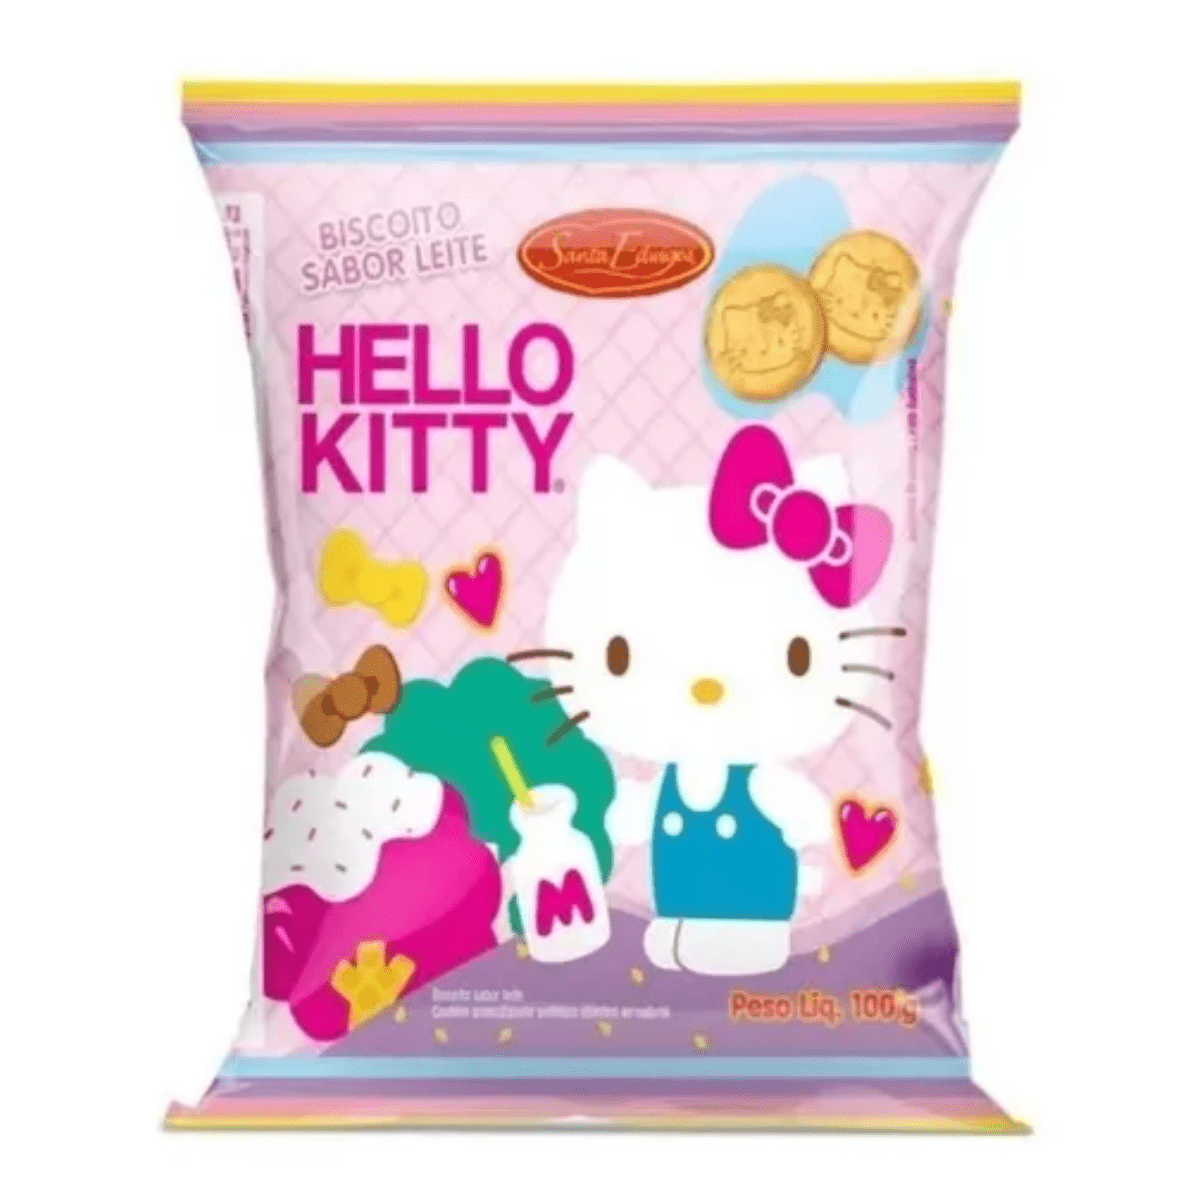 Biscoito Sabor Leite com desenhos Hello Kitty - 100 gramas